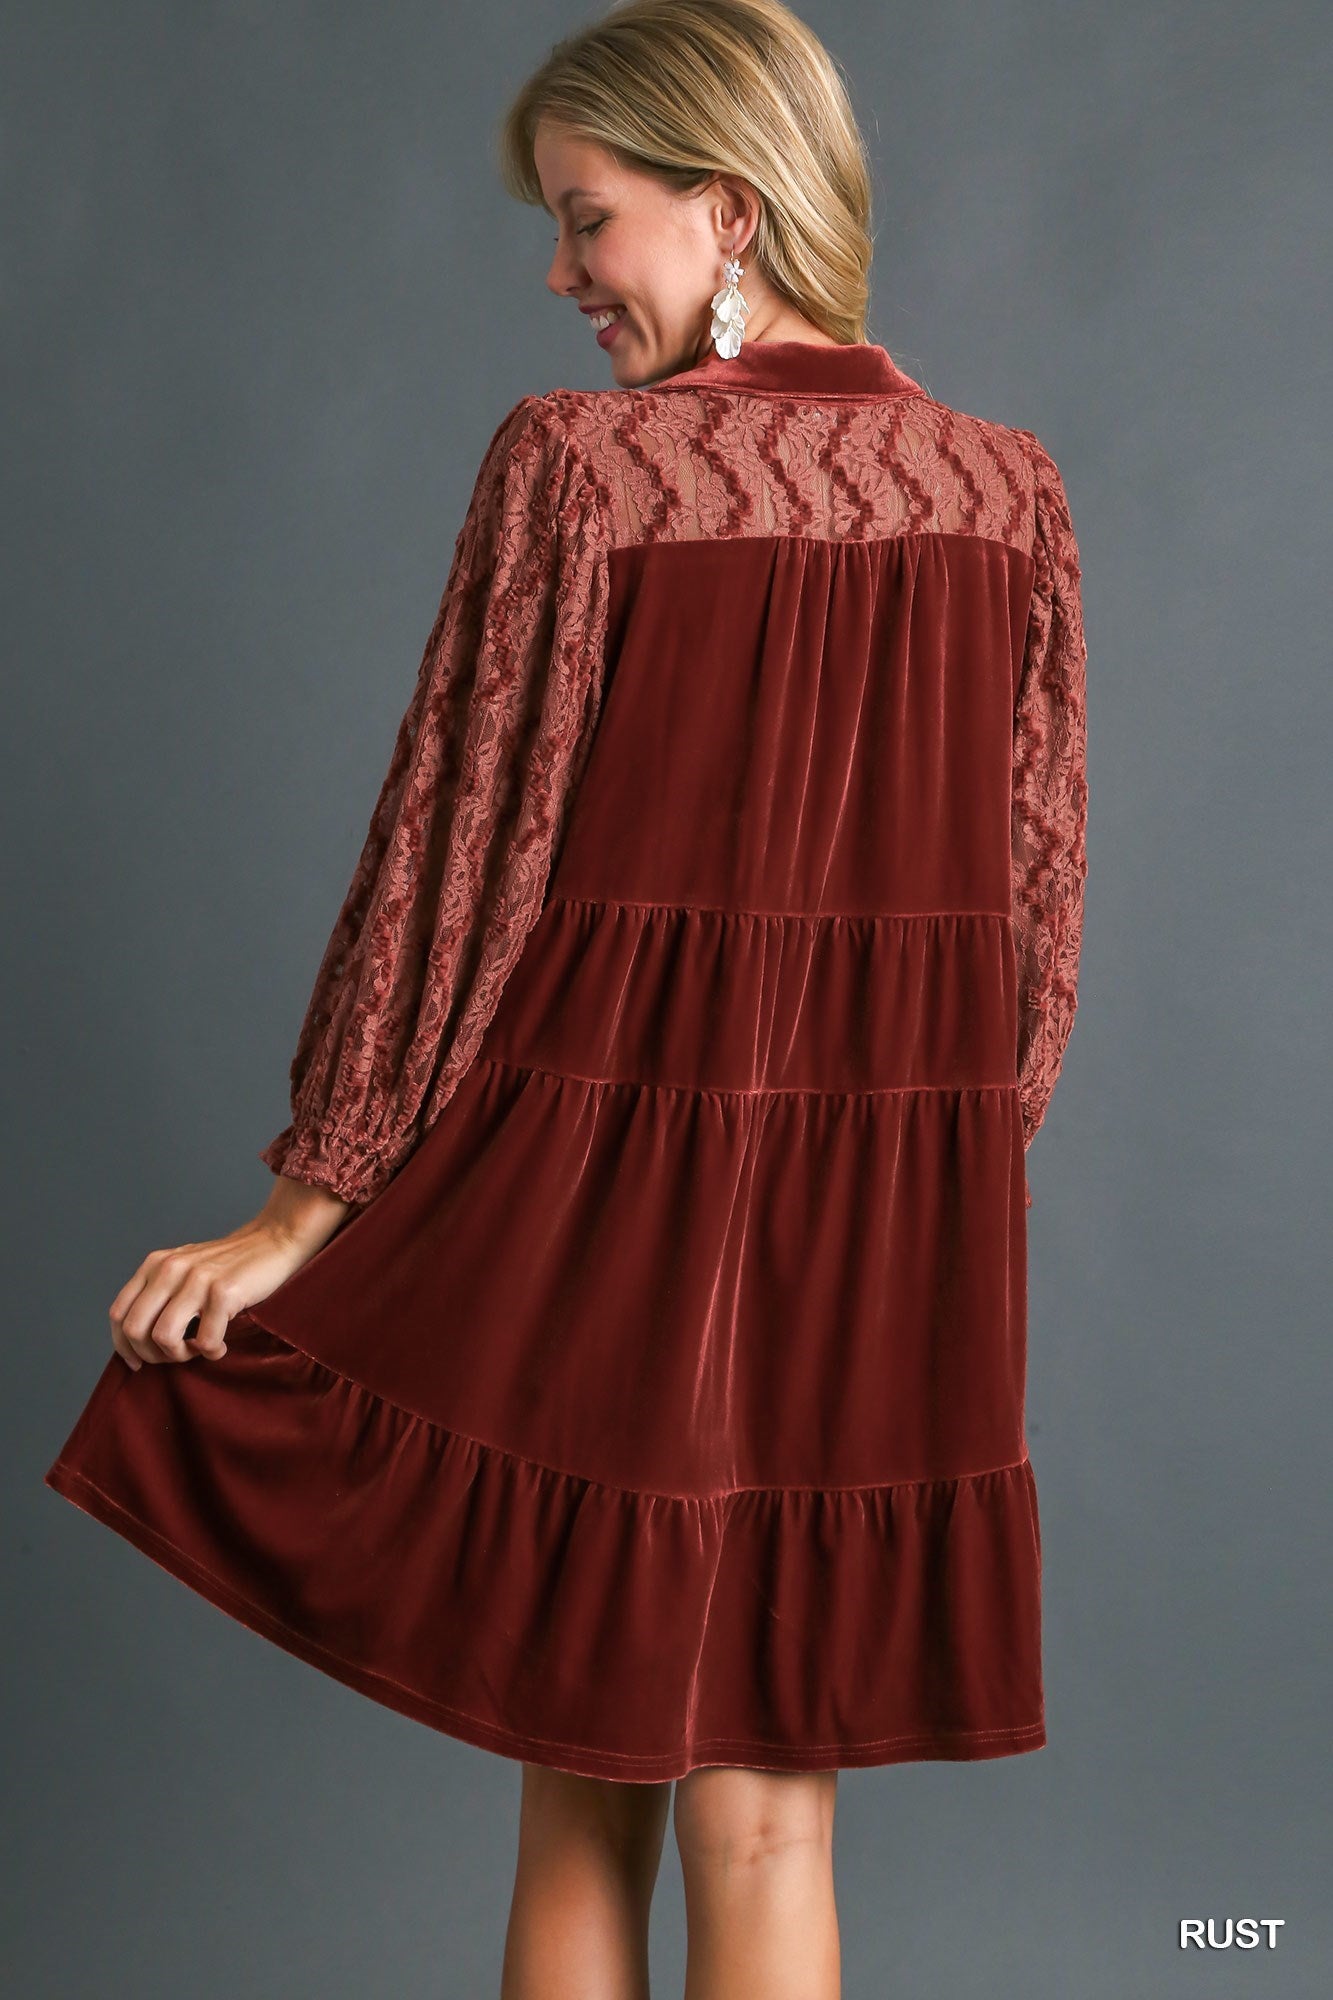 Rust Velvet Dress w/ Lace Details